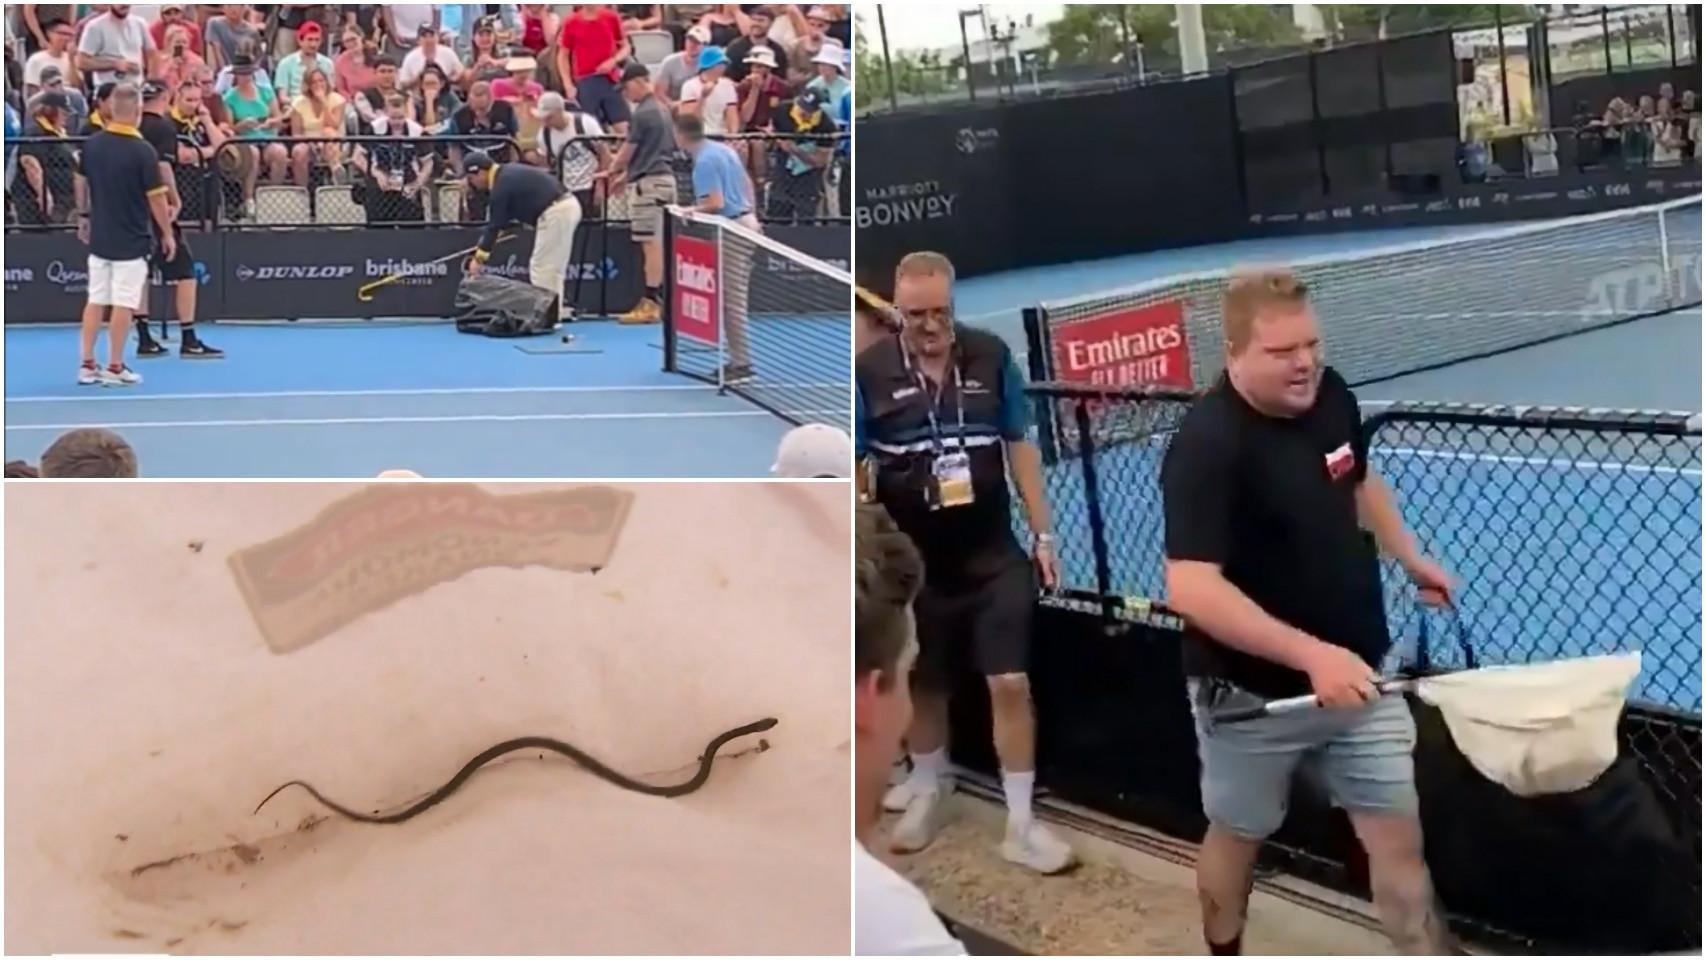 Operarios atrapan a una serpiente en el ATP 250 de Brisbane.